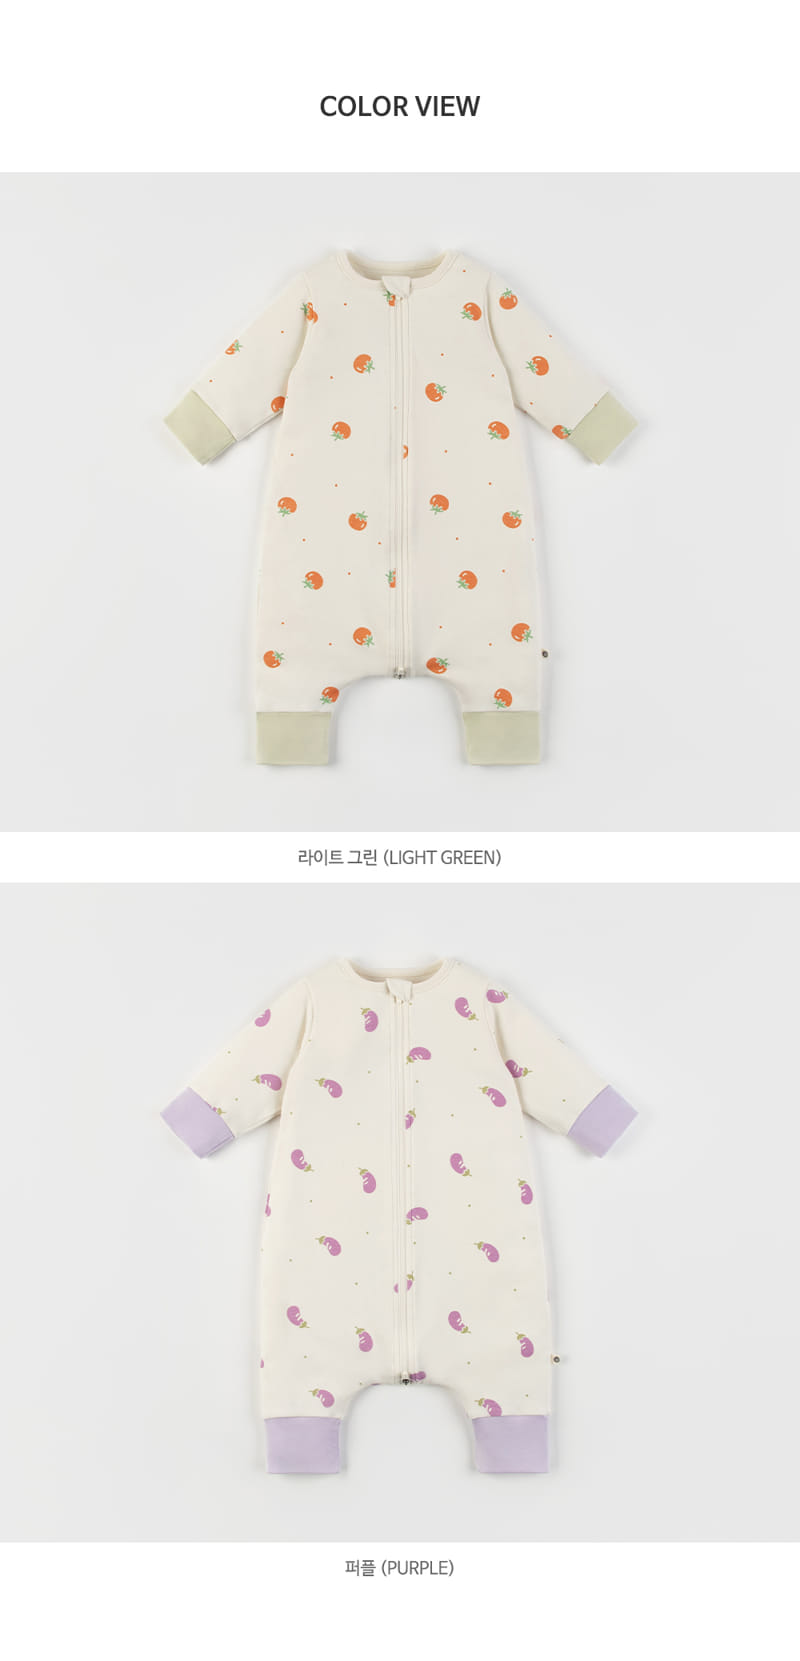 Kids Clara - Korean Baby Fashion - #babyclothing - Cuddly Baby Sleeping Body Suit - 8